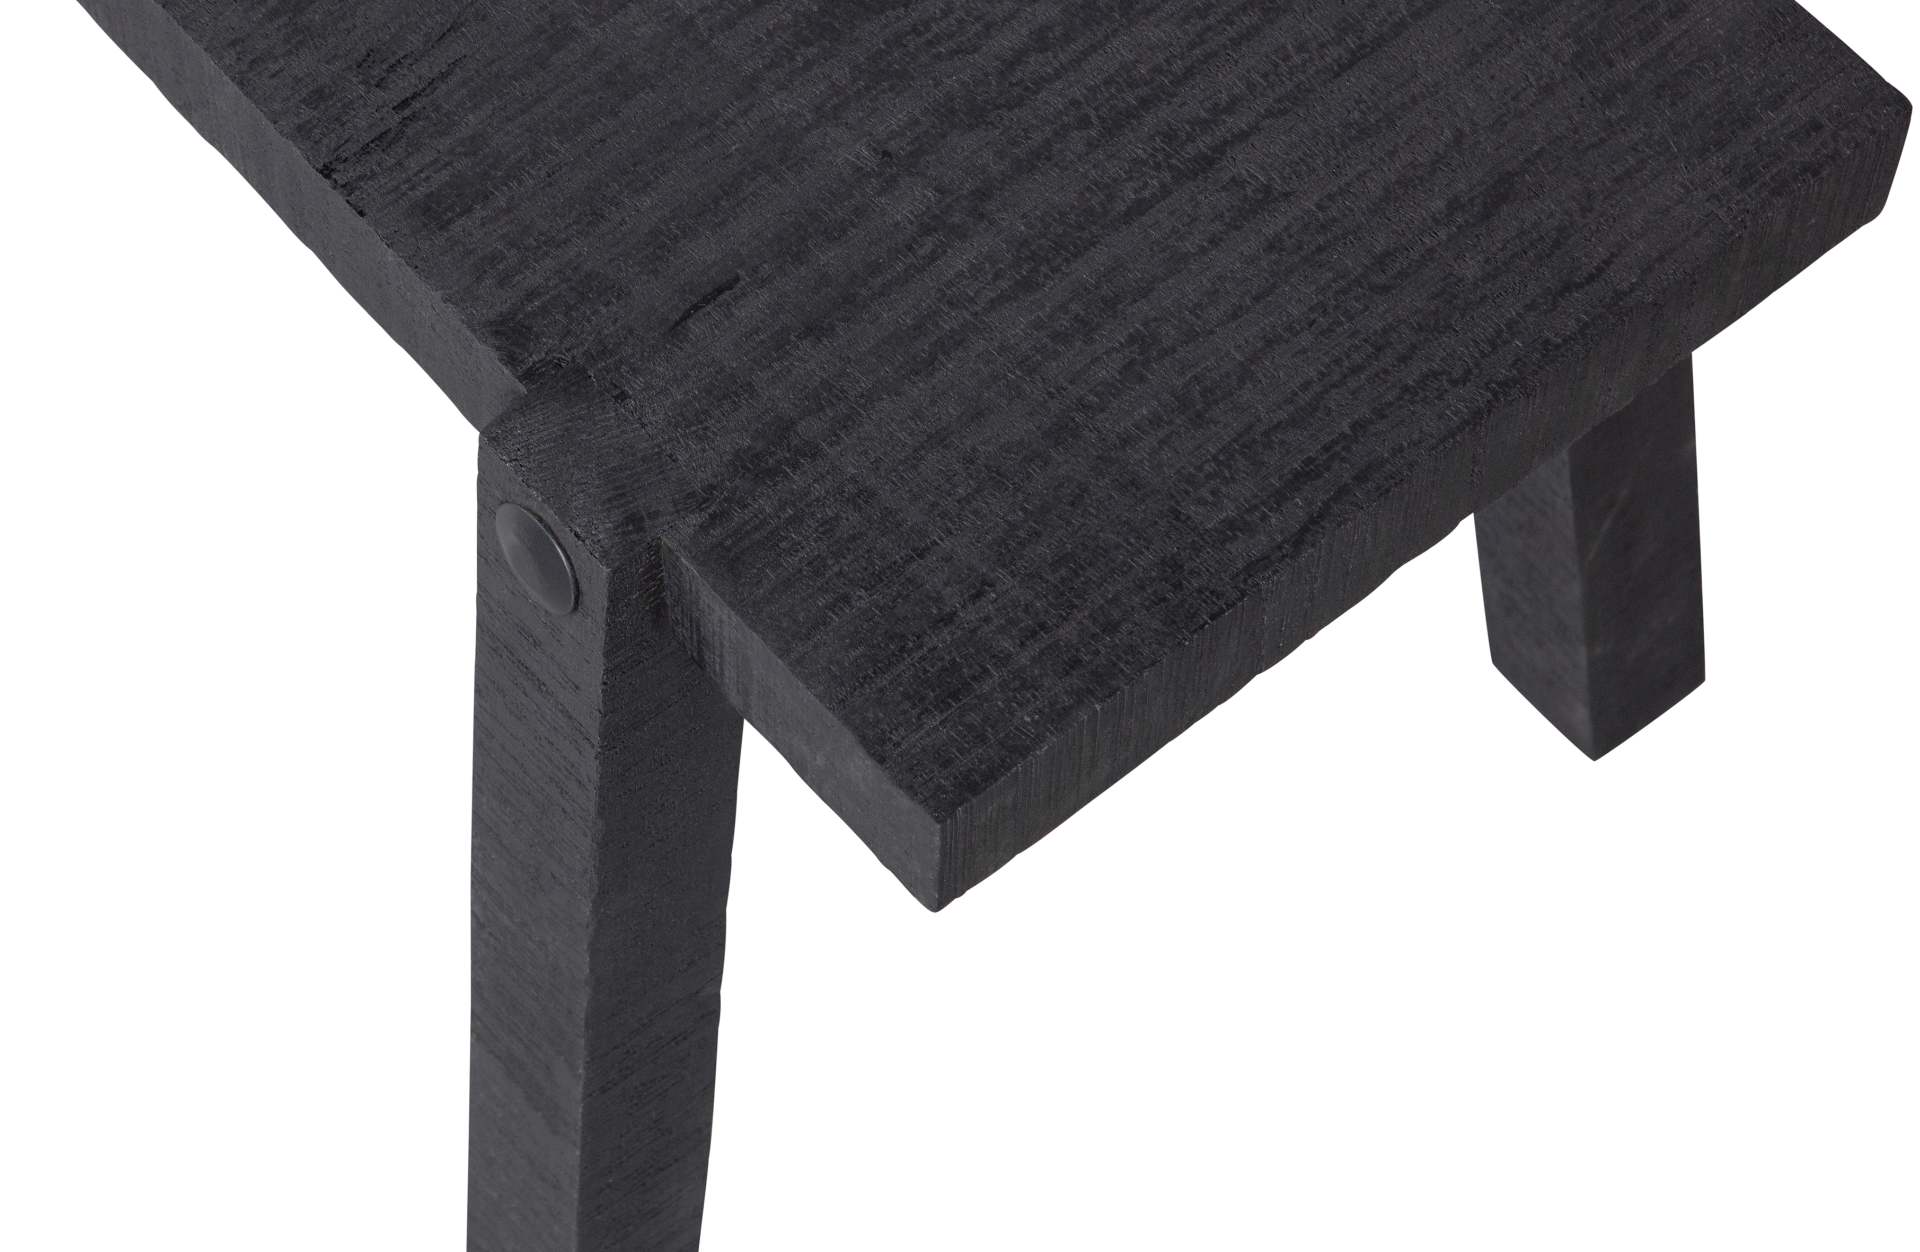 Der Beistelltisch Luis wurde aus Mangoholz gefertigt, welches einen schwarzen Farbton besitzt. Der Tisch überzeugt mit seinem modernen Design.